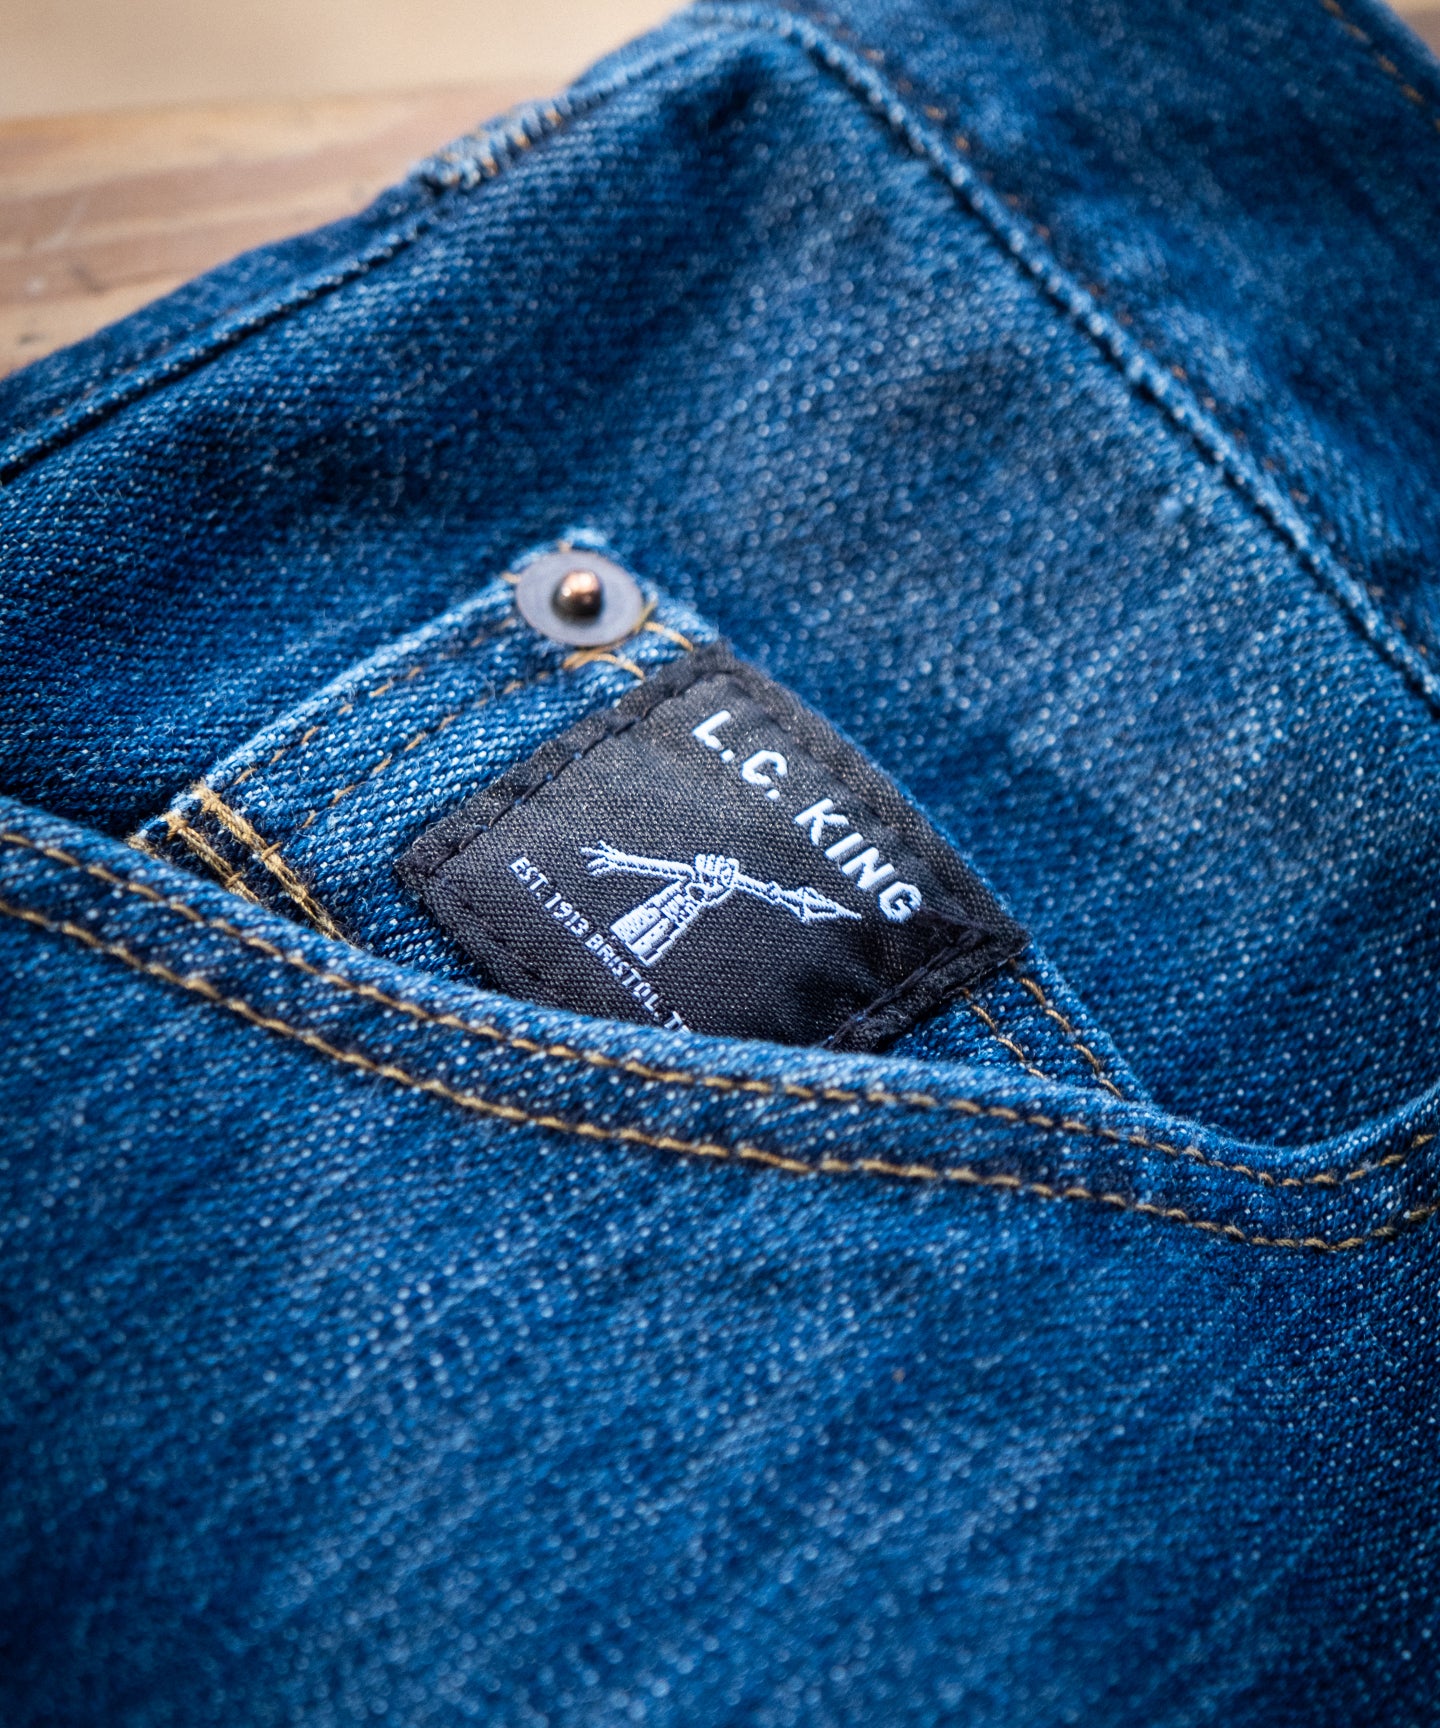 Washed Denim 5 Pocket Jean